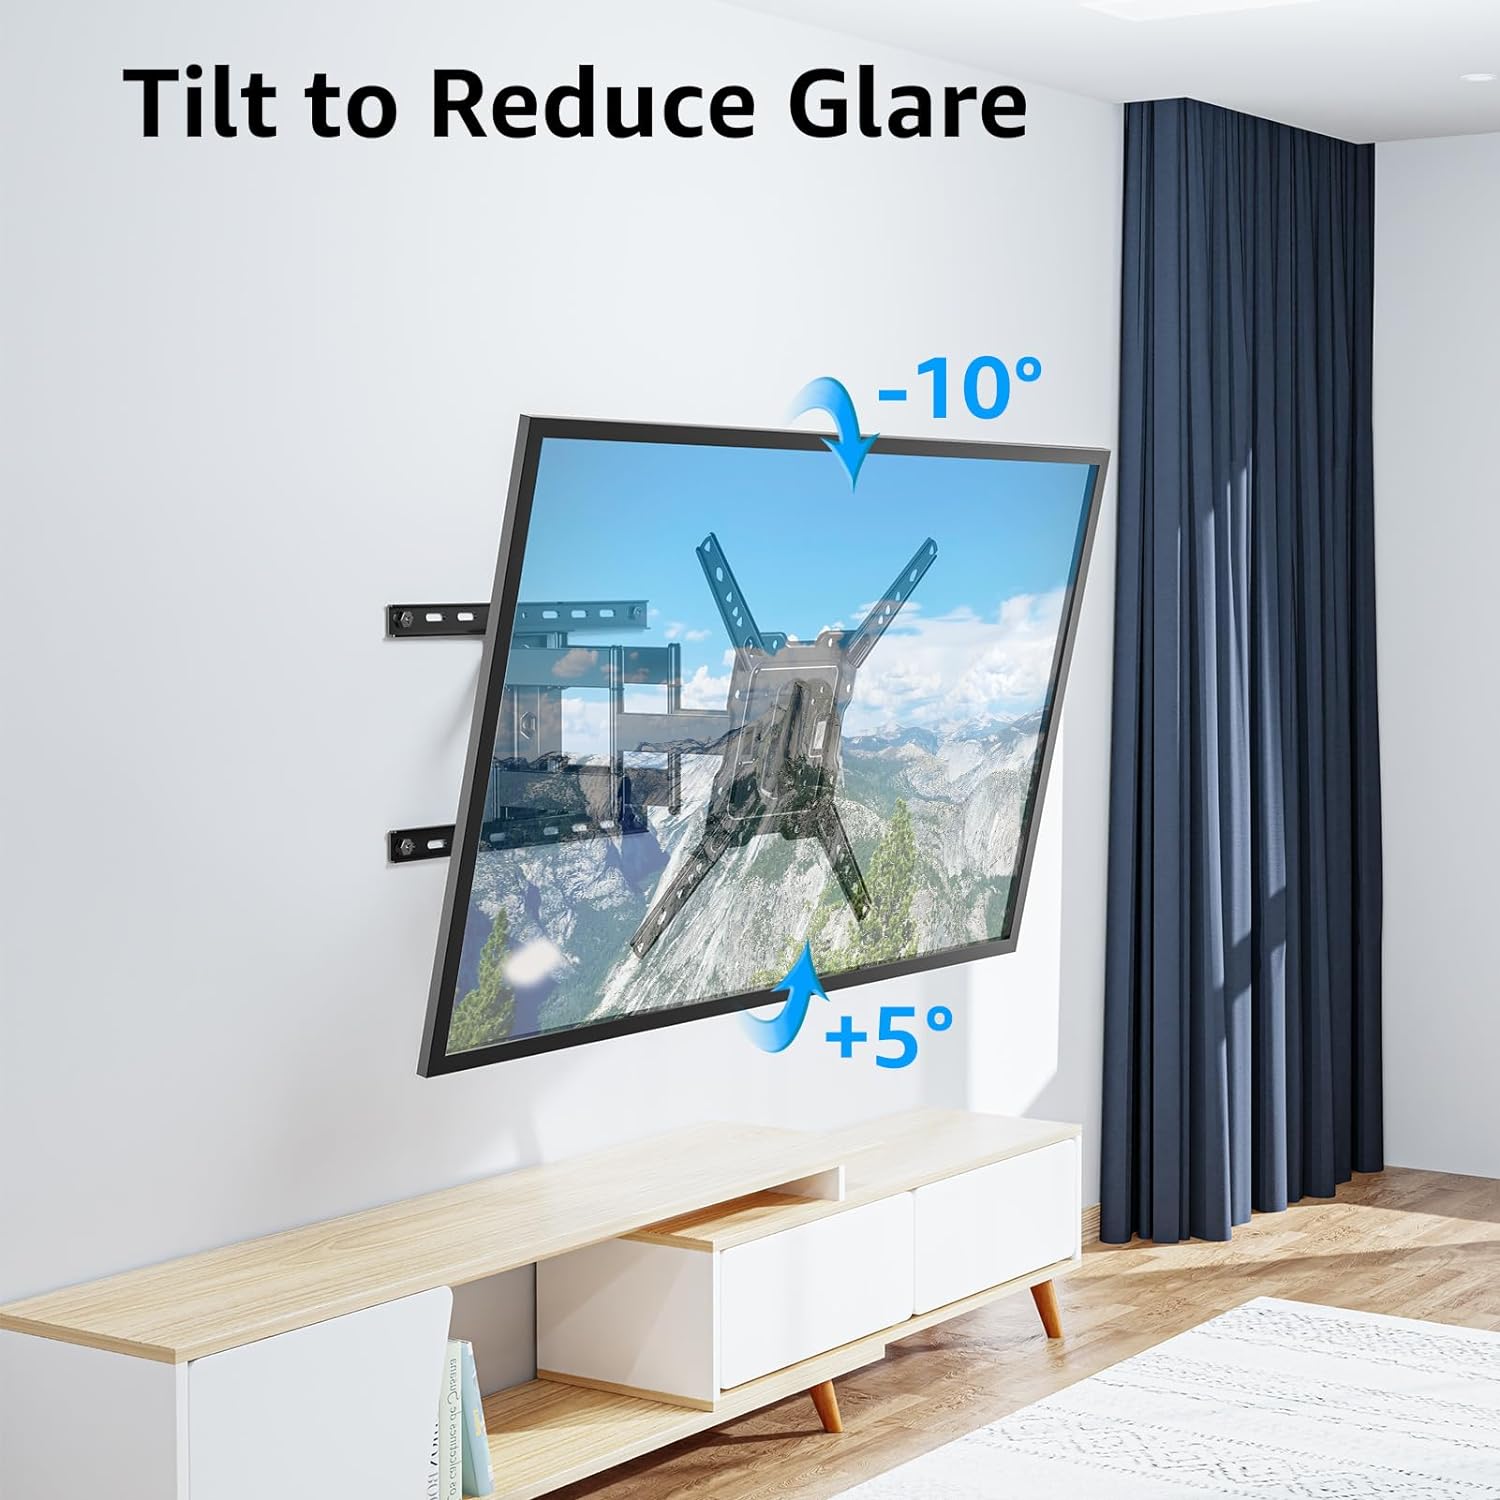 MOUNTUP Ultra Slim Full Motion TV Wall Mount for 26" -75" TVs MUT0062